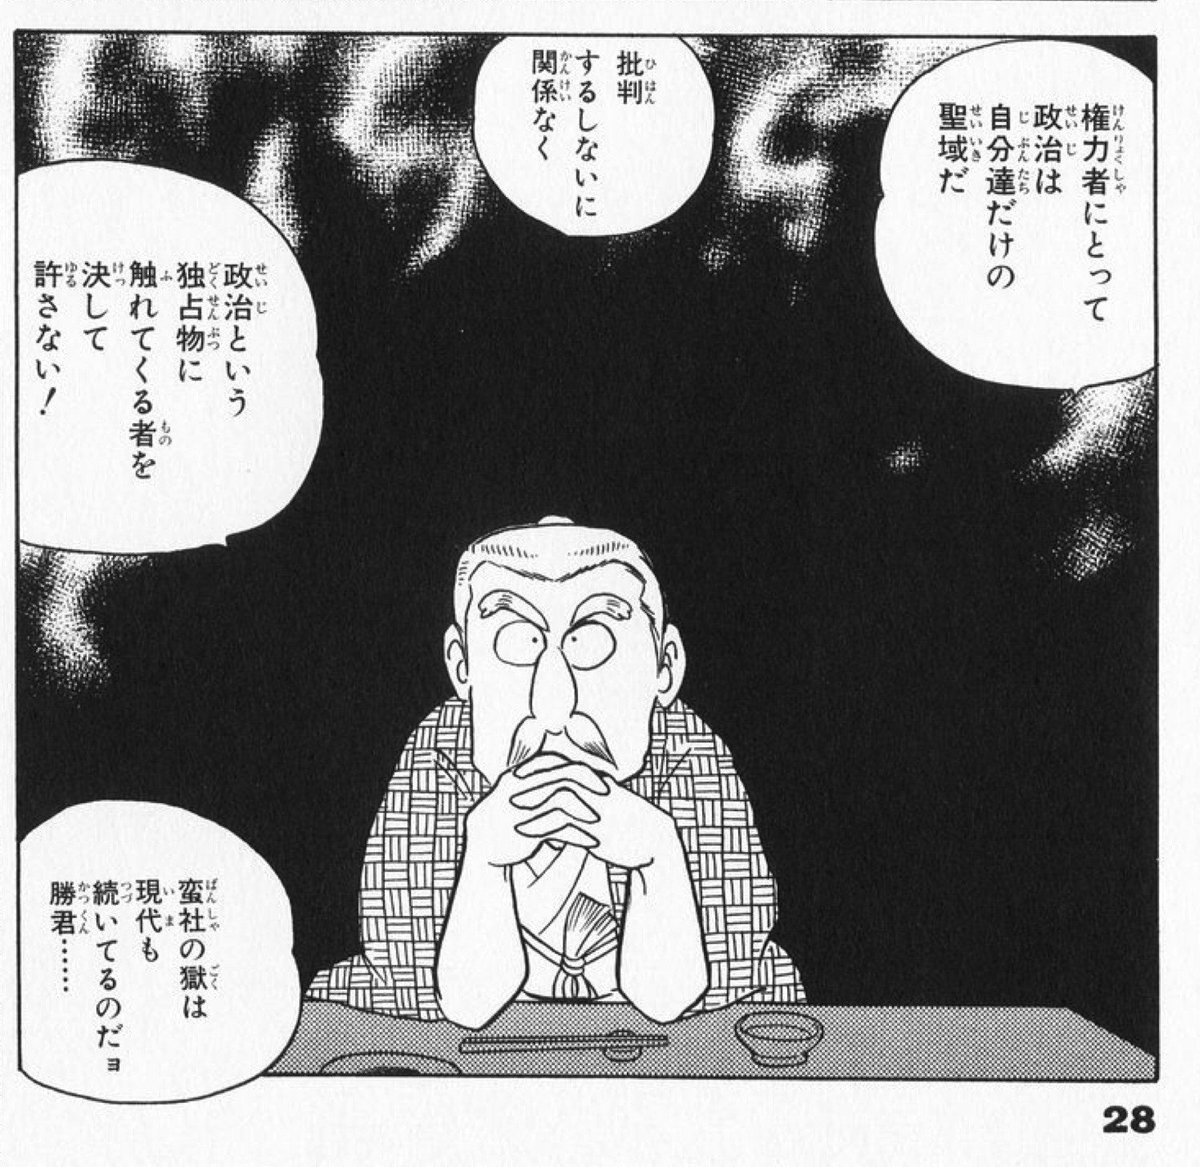 Naruhisa007 みなもと太郎 風雲児たち で一番好きなコマはこれ 年以上前に読んだ漫画が最近になってから身にしみるほどよく分かる みなもと太郎 風雲児たち ワイド版19巻p28 みなもと太郎 風雲児たち 蛮社の獄